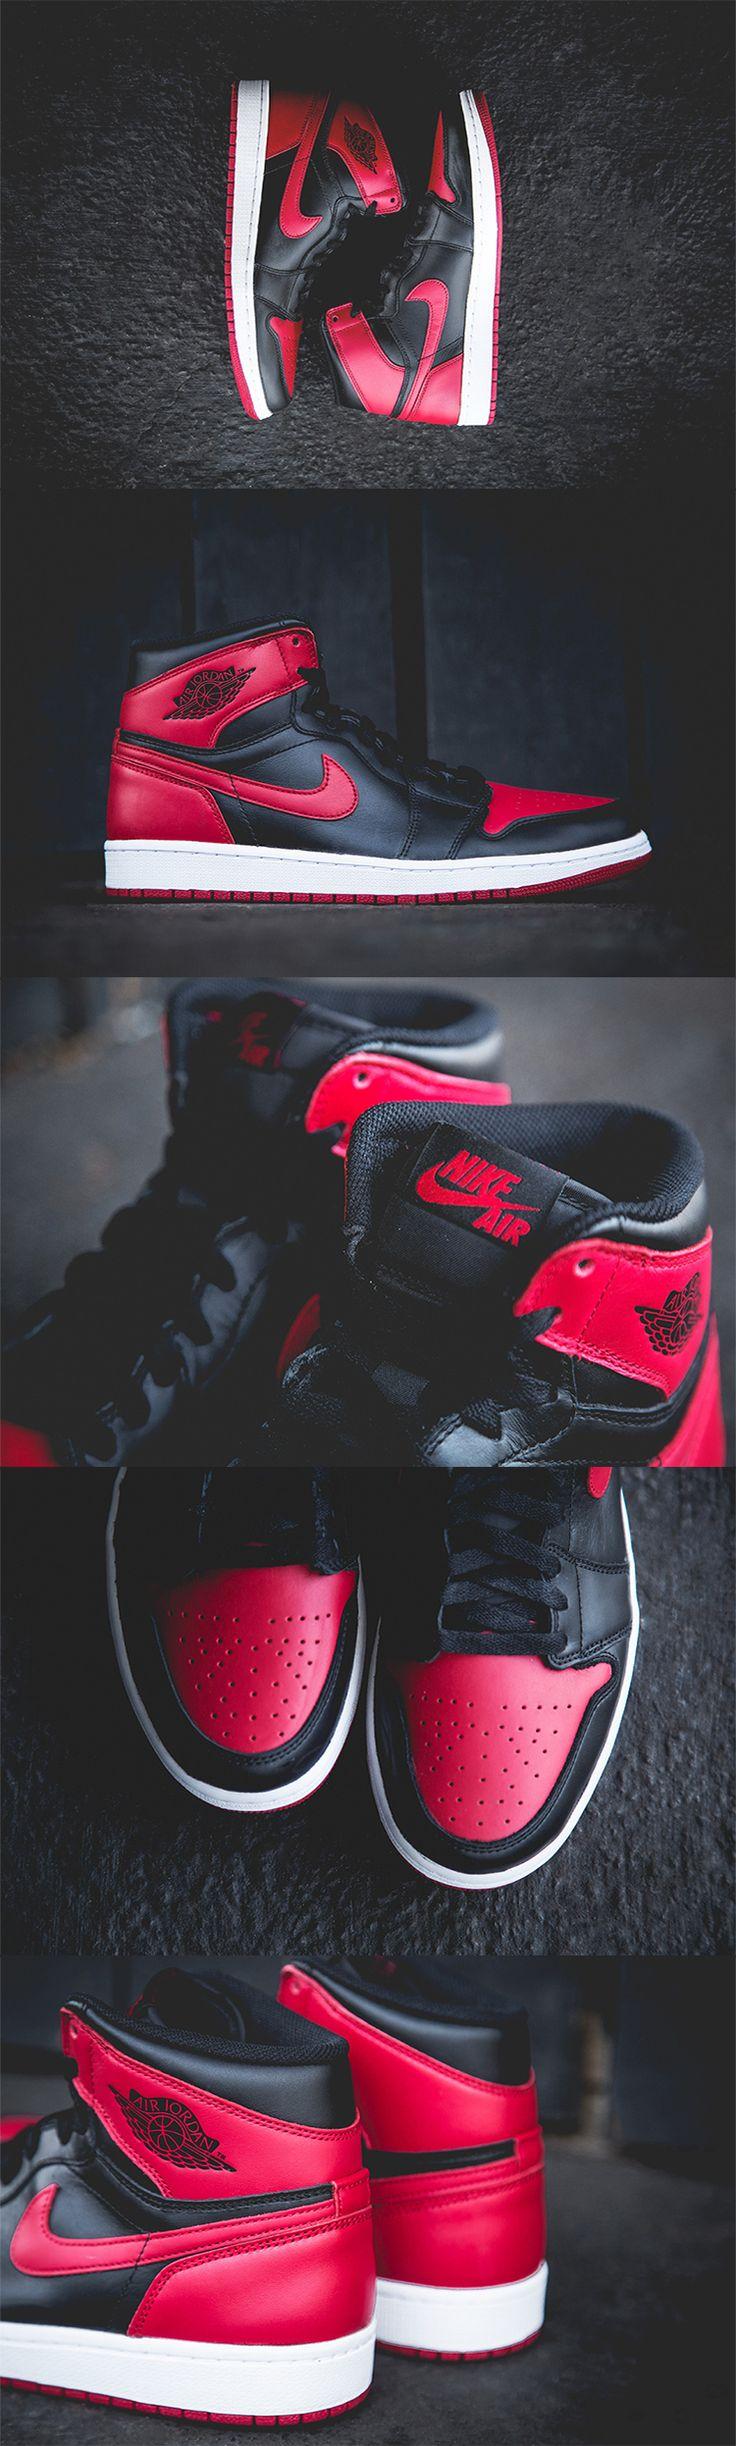 Nike Air Jordan 1 Shoe Wallpaper - Wallpaperforu